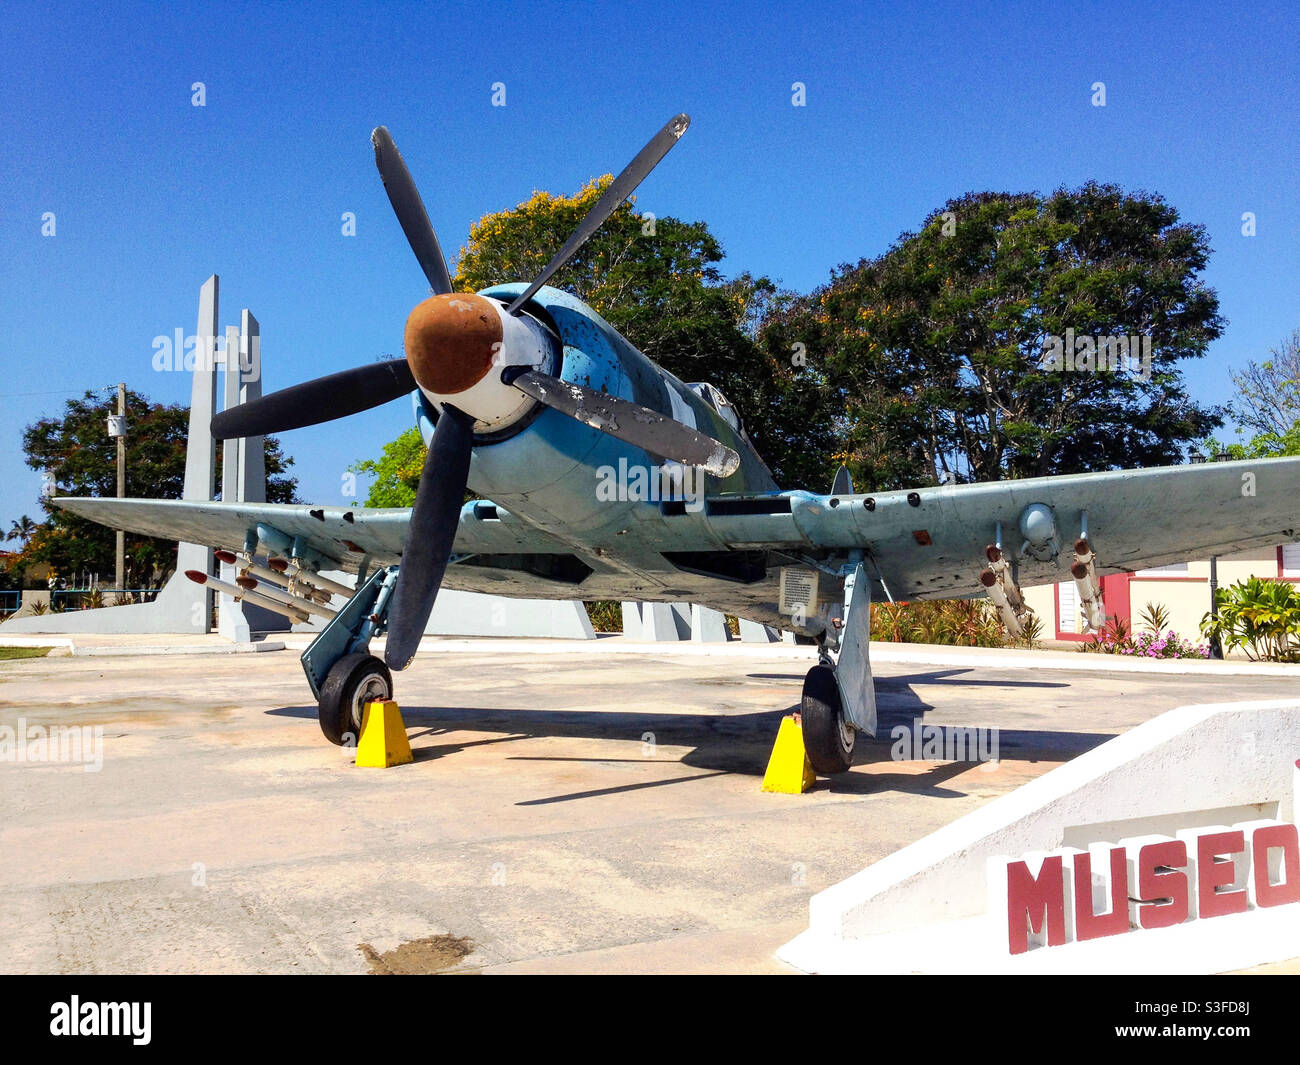 Avion de chasse British Hawker Sea Fury utilisé par l'armée de l'air cubaine au musée de la baie des cochons, Playa Giron, Cuba Banque D'Images